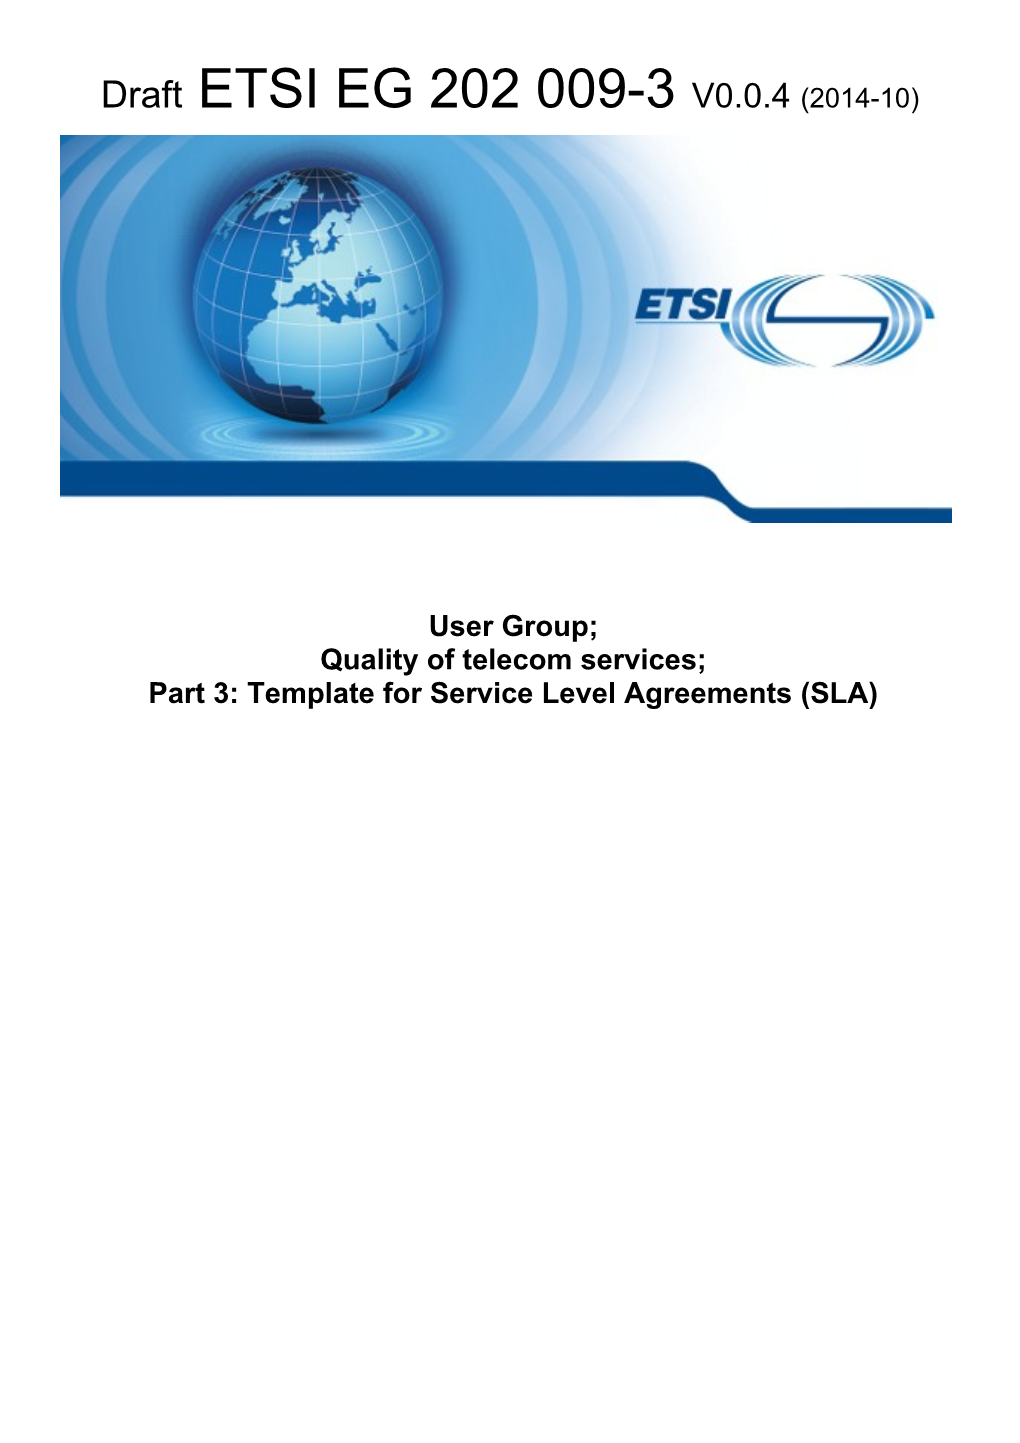 Final Draft ETSI EG 202 009-3 V0.0.0